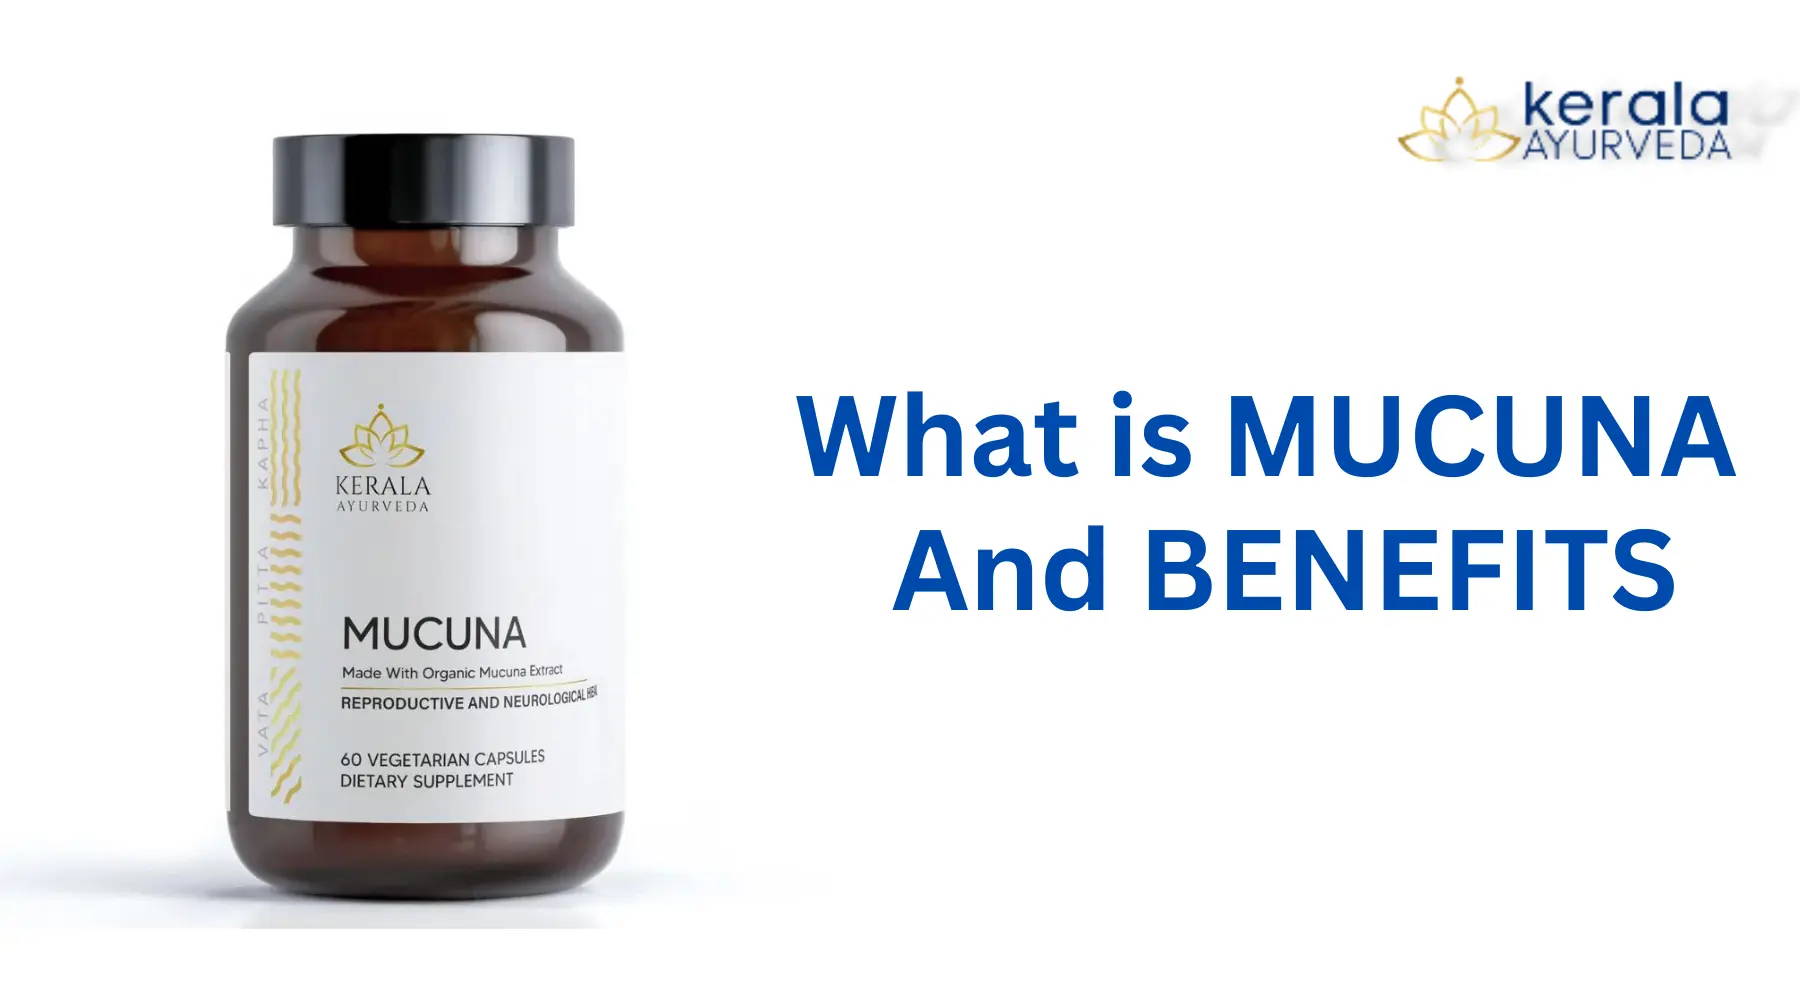 What is Mucuna